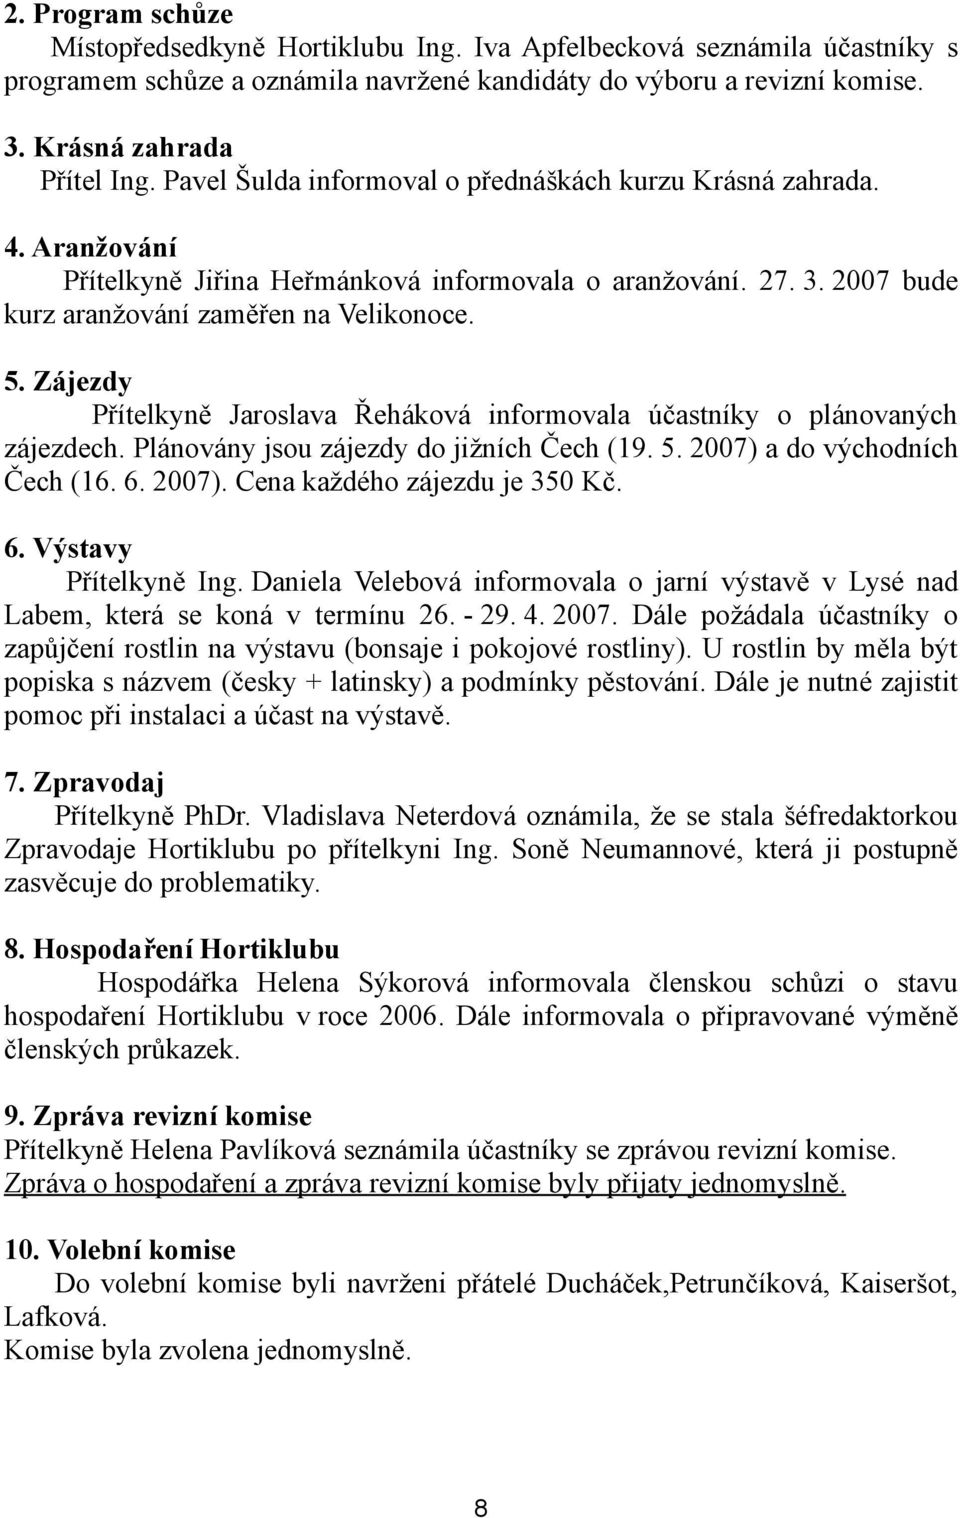 Zájezdy Přítelkyně Jaroslava Řeháková informovala účastníky o plánovaných zájezdech. Plánovány jsou zájezdy do jižních Čech (19. 5. 2007) a do východních Čech (16. 6. 2007). Cena každého zájezdu je 350 Kč.